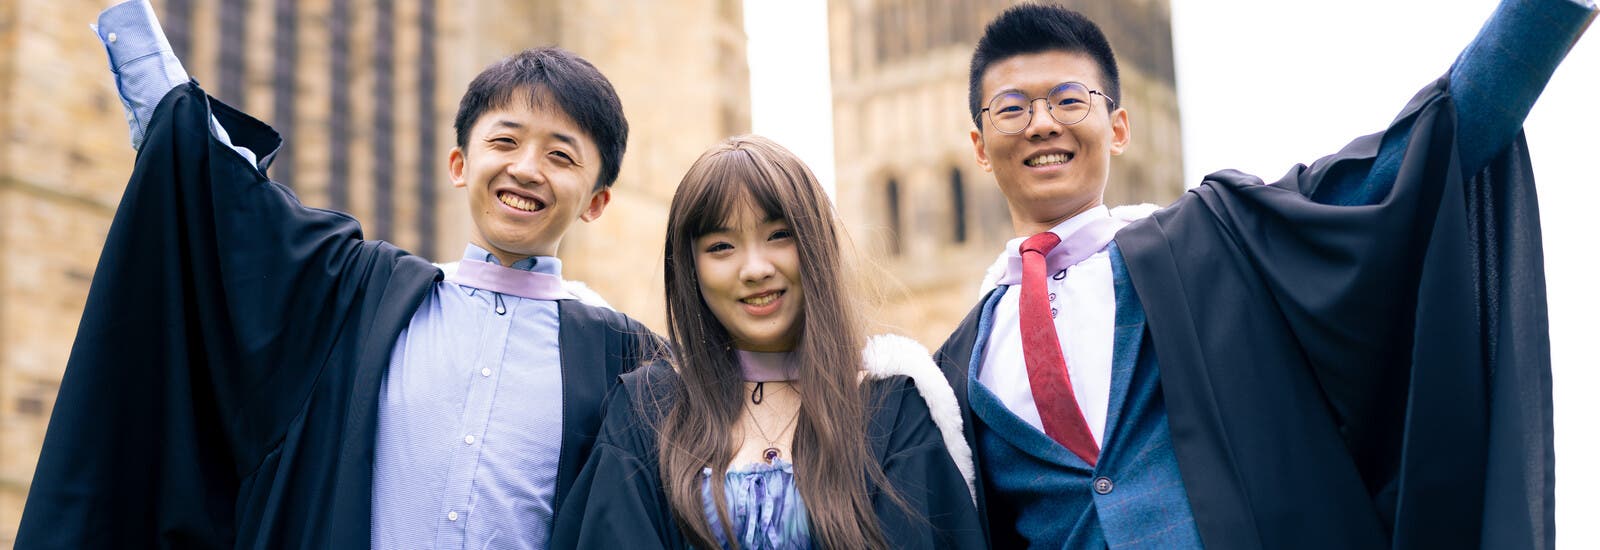 Durham graduates smiling at camera